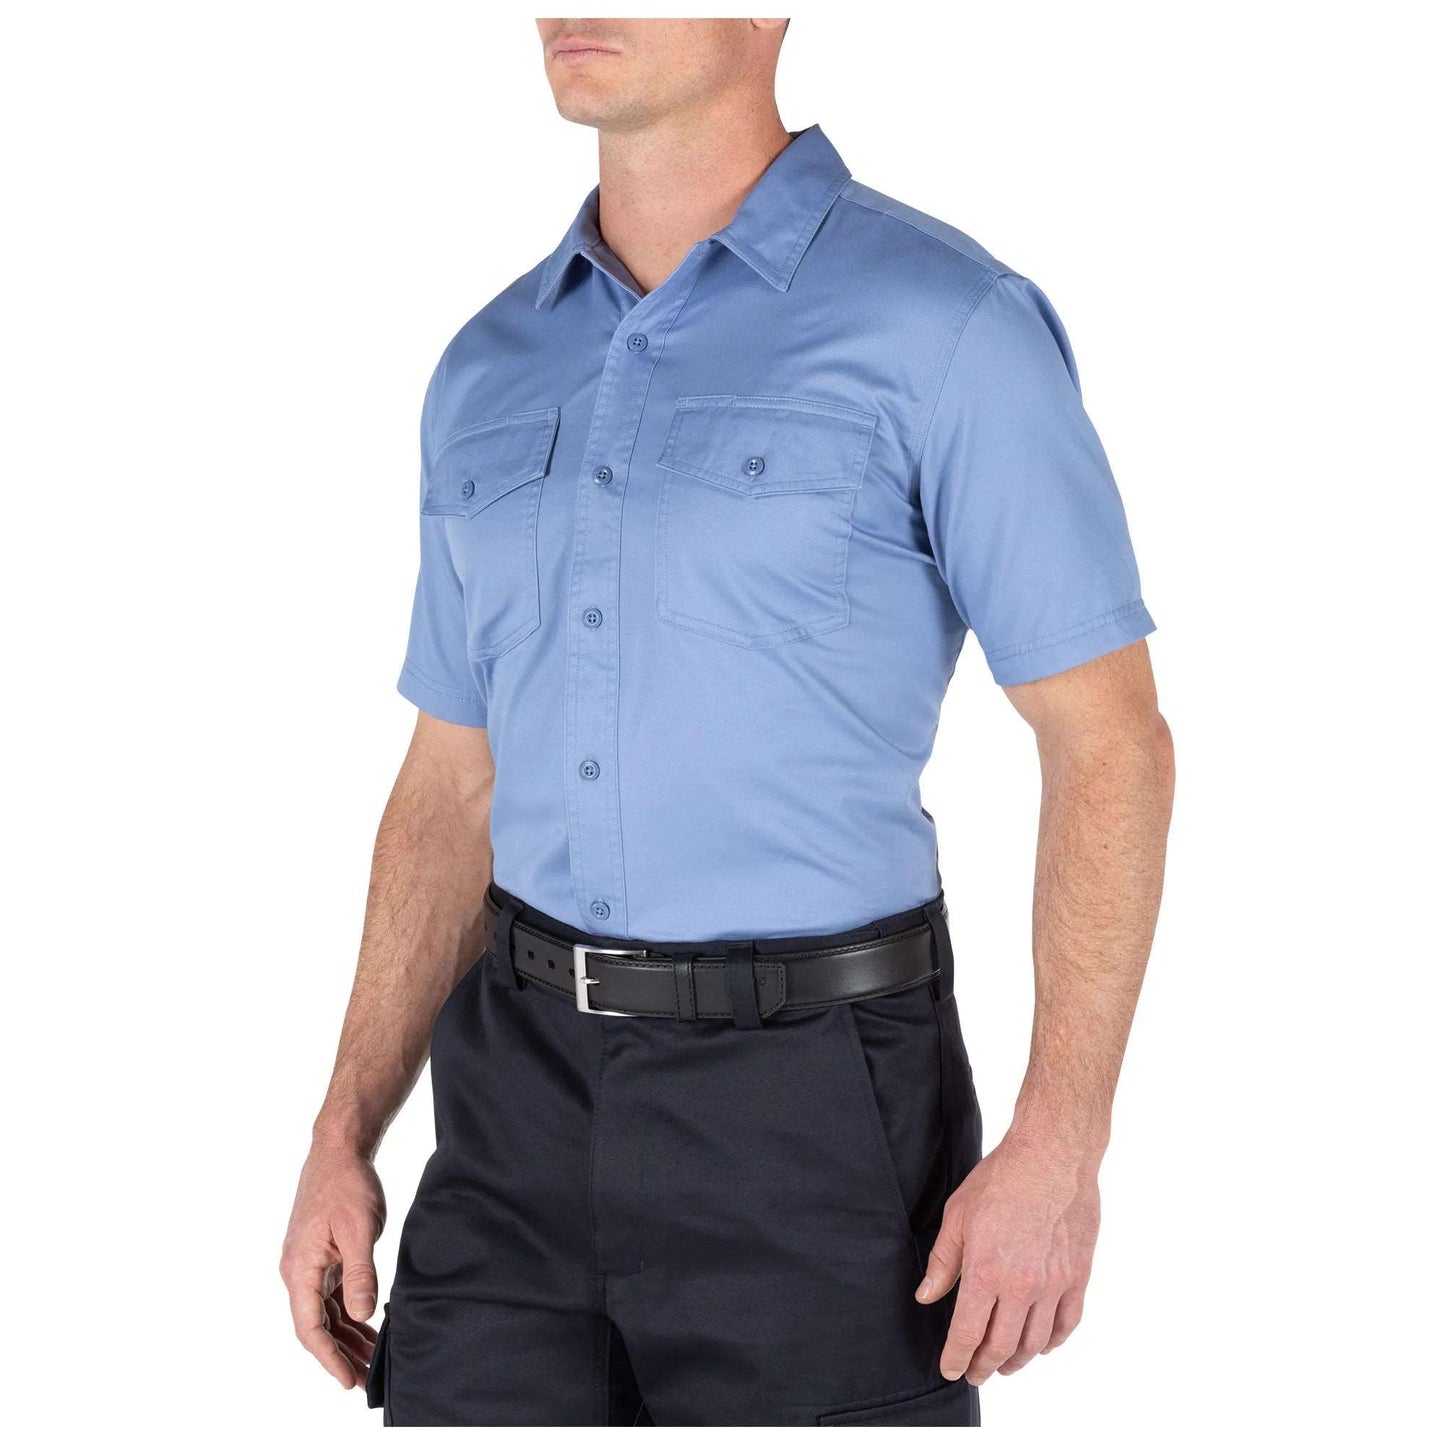 5.11 Tactical Company Short Sleeve Shirt-Tac Essentials